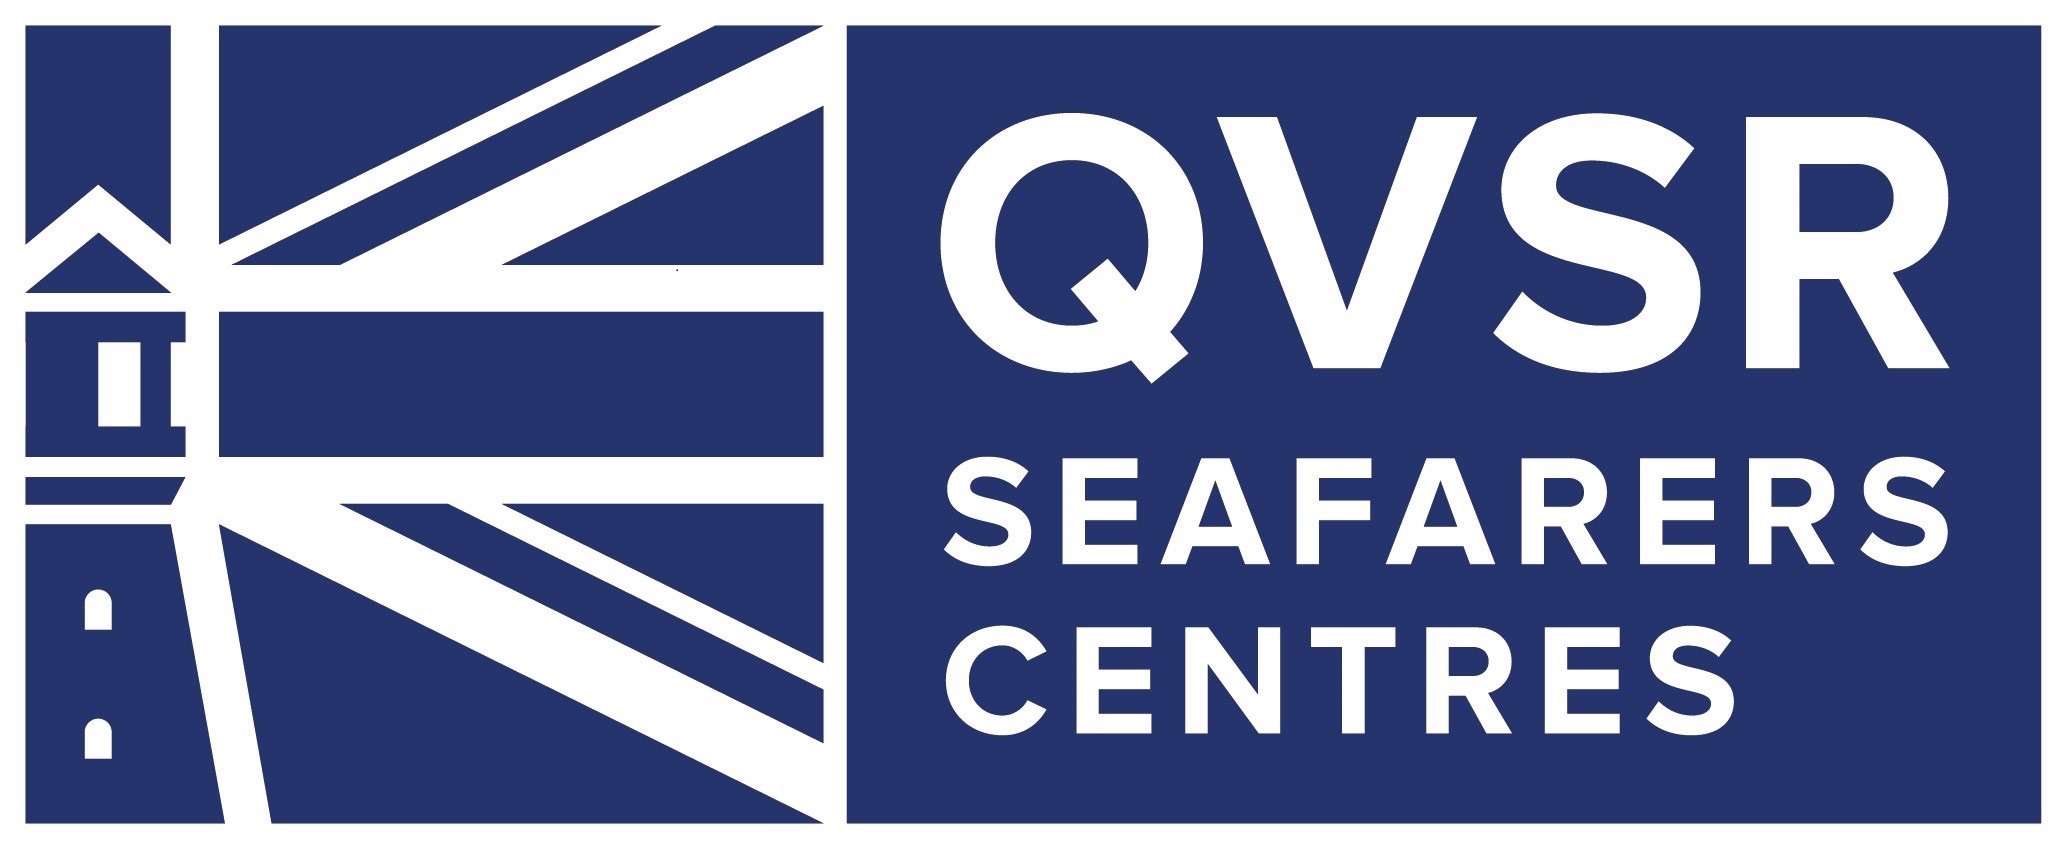 QVSR_Centre_logo.jpg